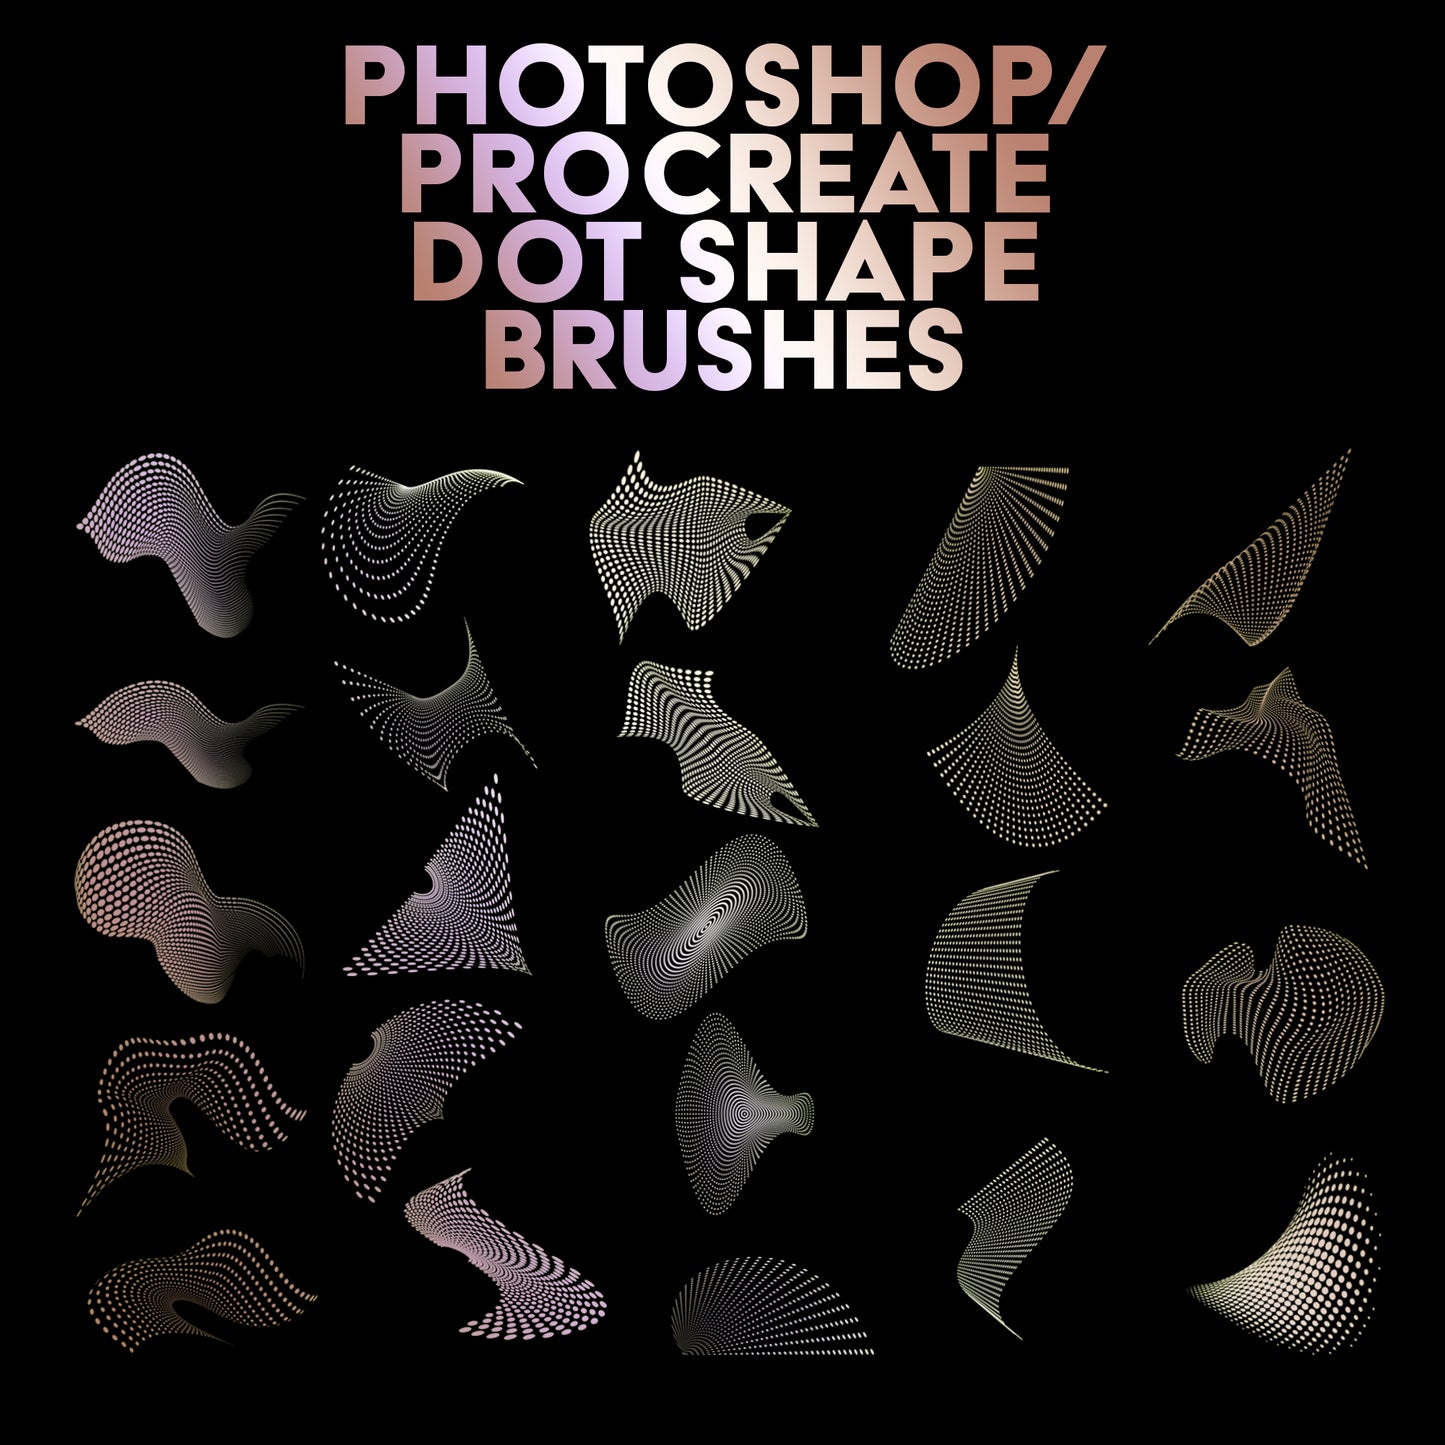 Photoshop / Procreate Dot Shape Brush Pack 1